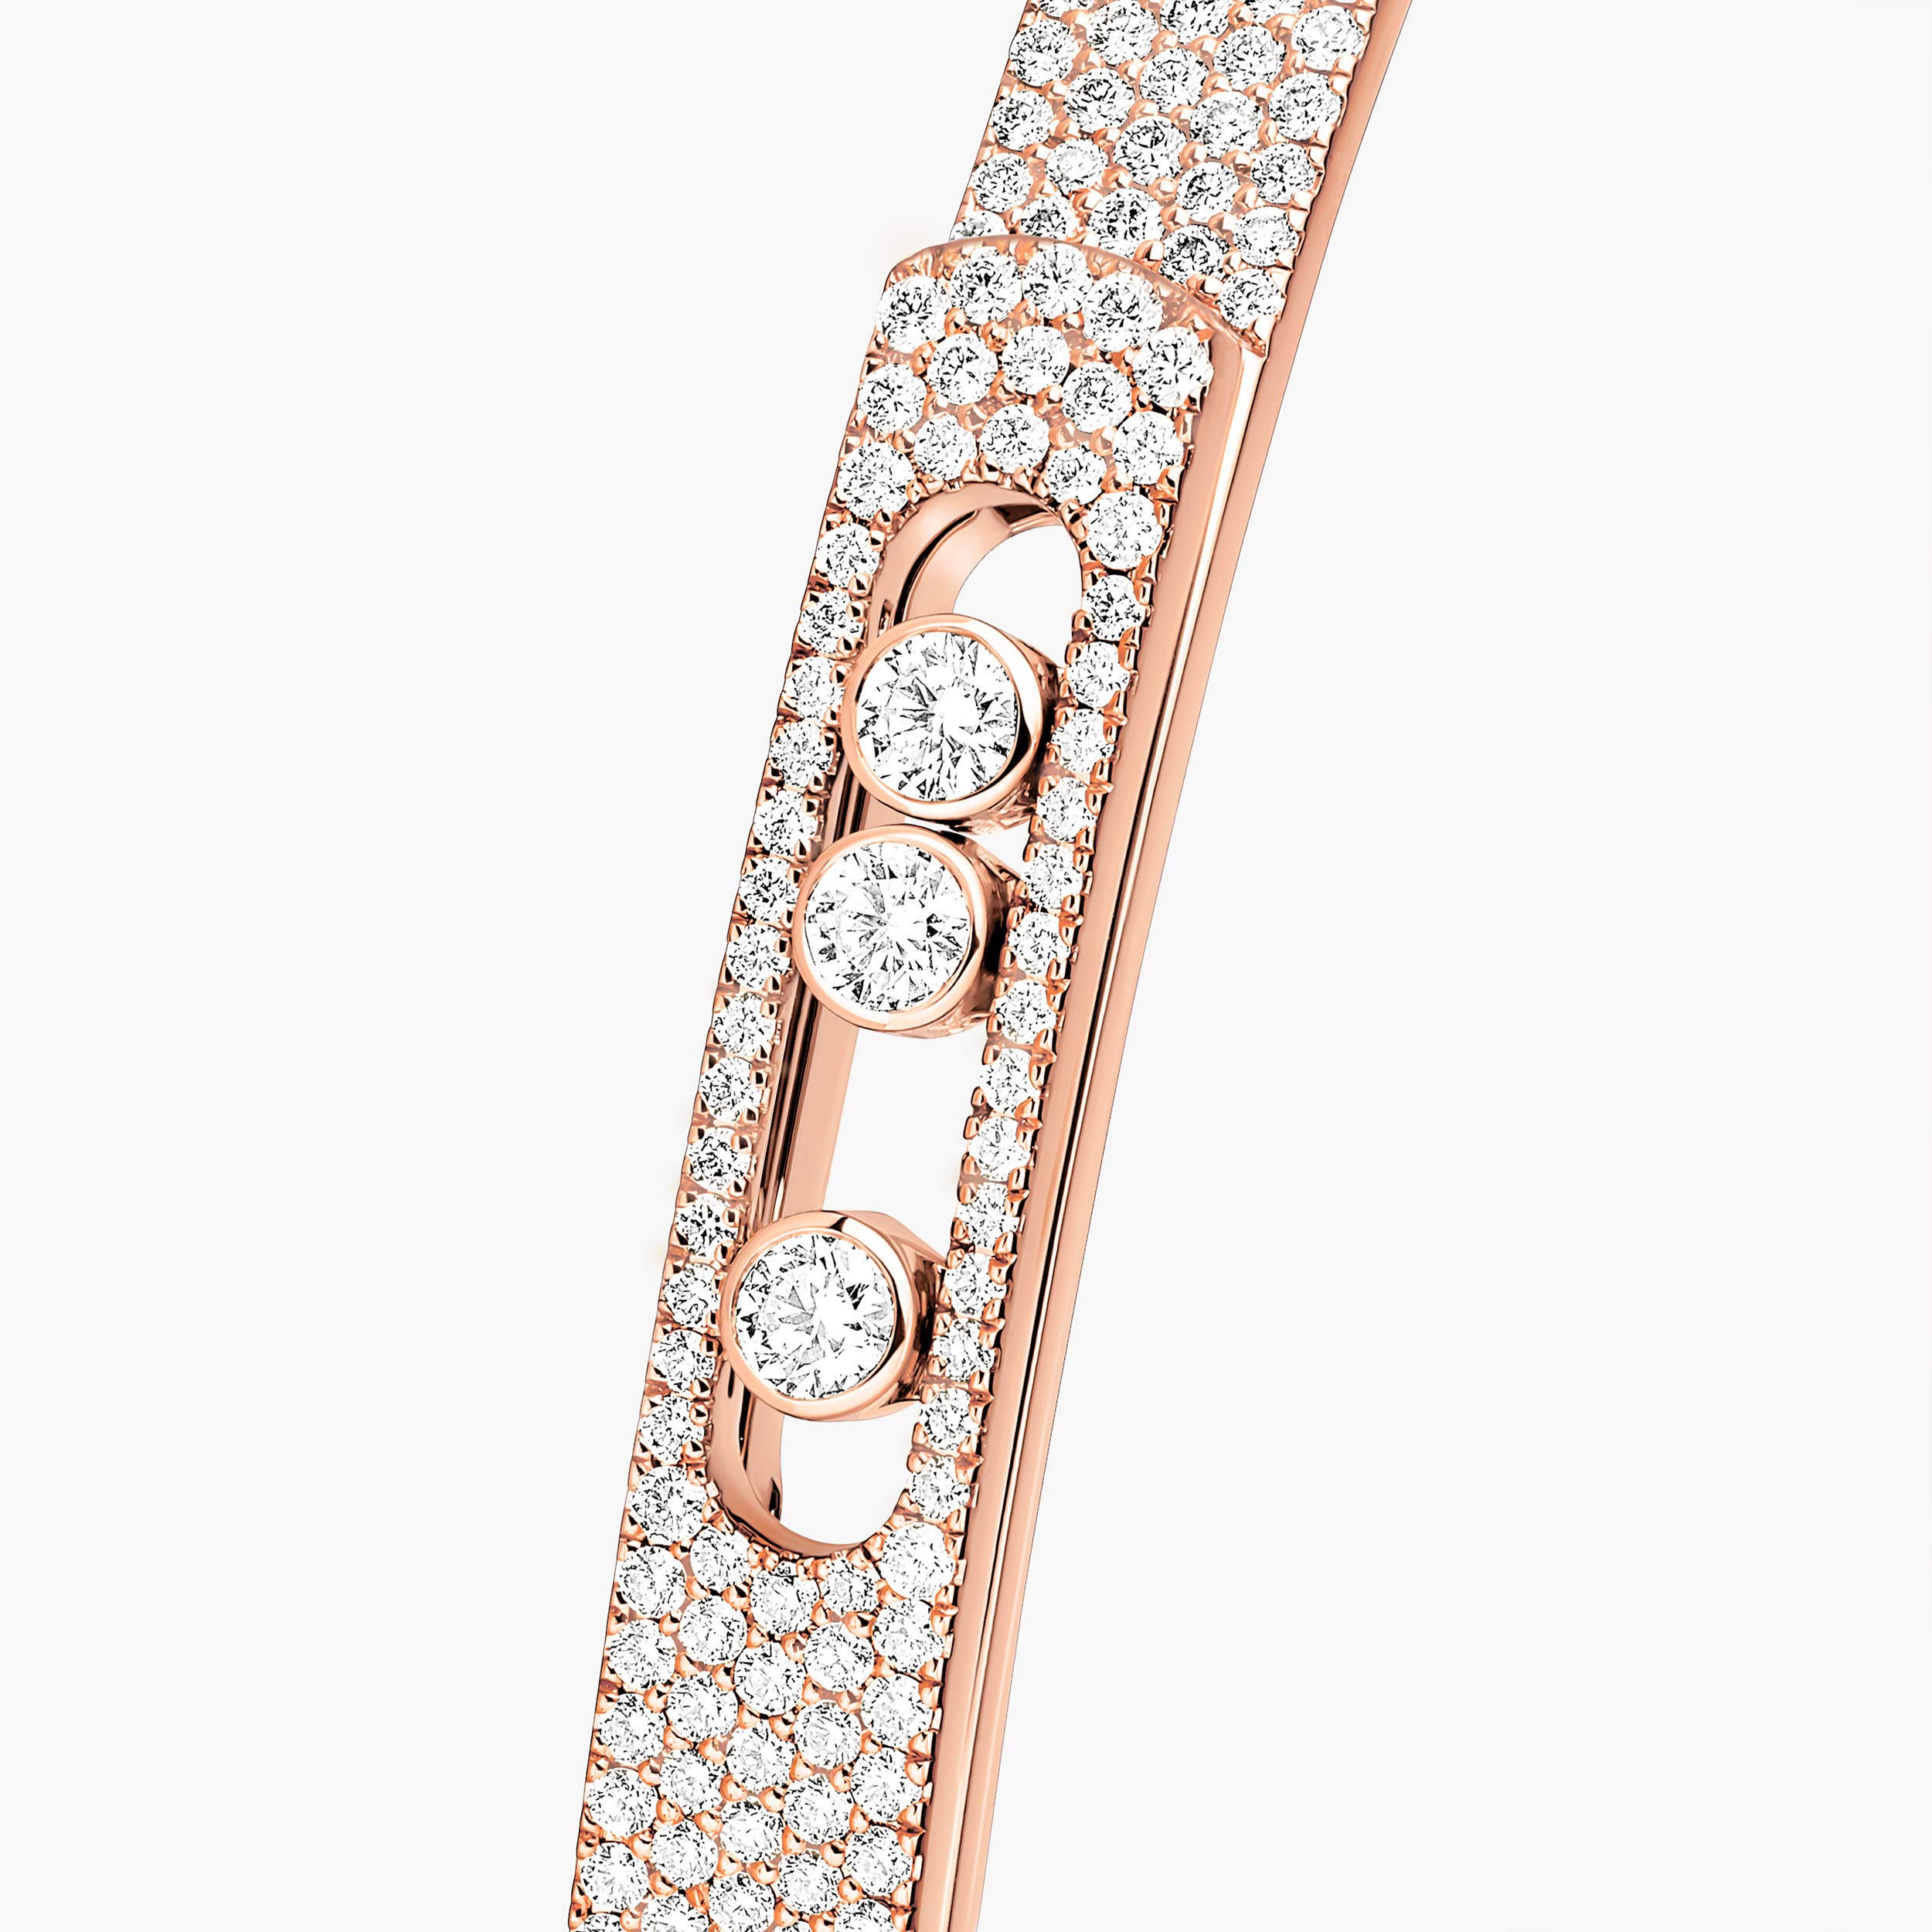 Move Noa SM Full Pavé Bangle Pink Gold For Her Diamond Bracelet 12721-PG